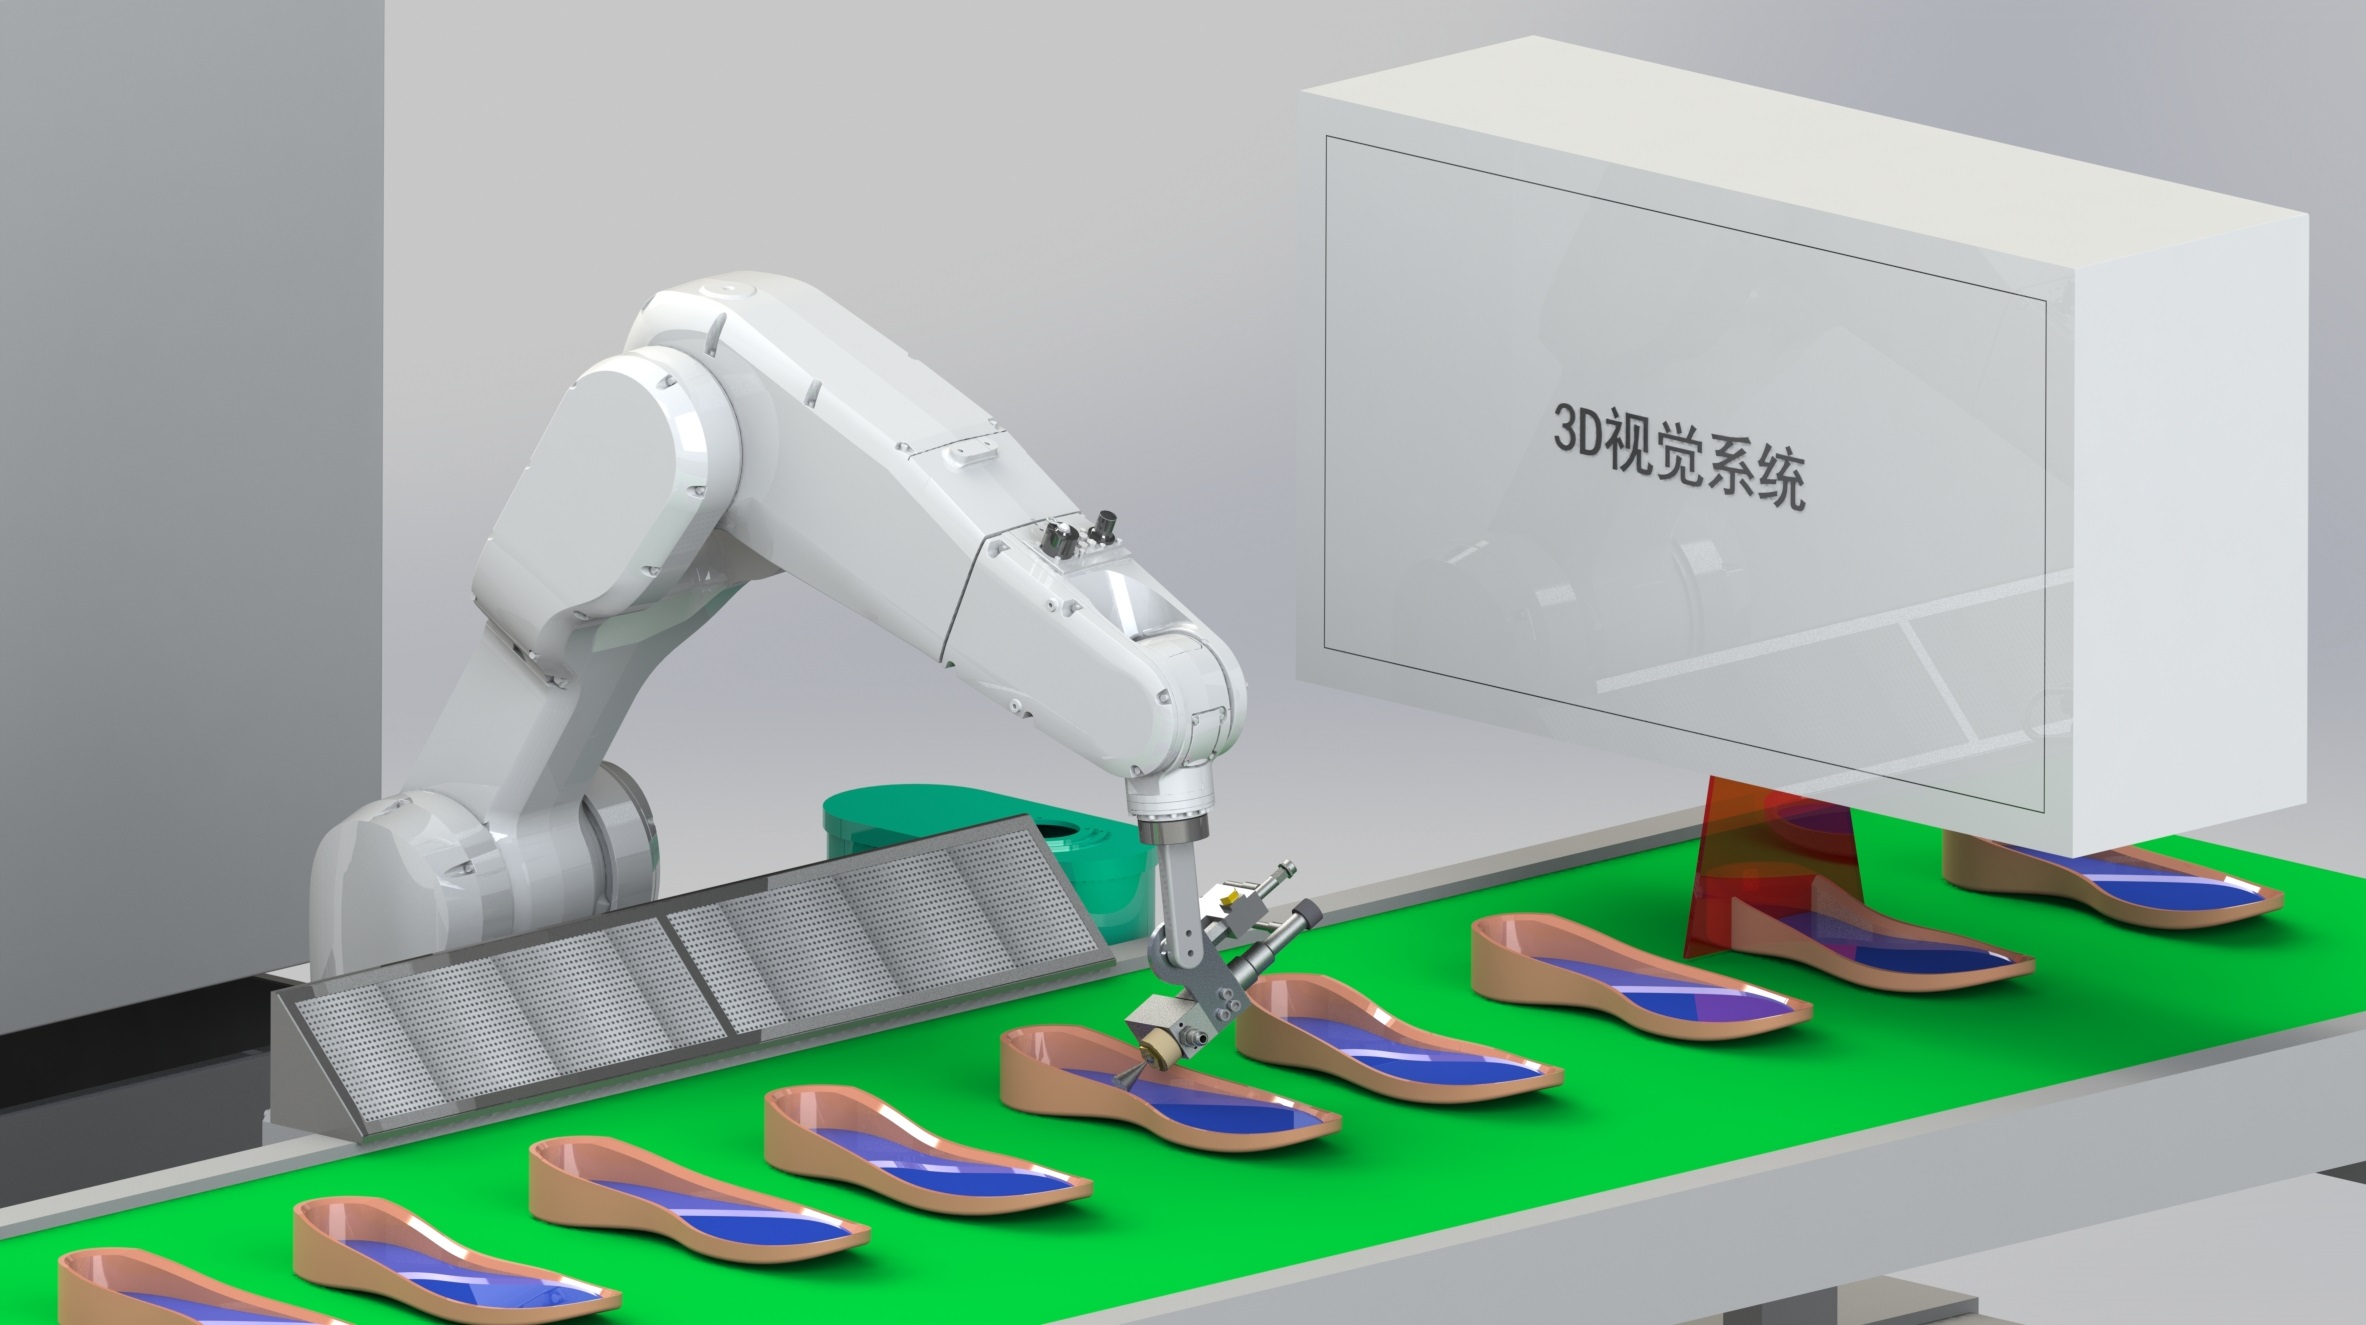 鞋業自動化引領未來 ,智能生產線改變制鞋模式